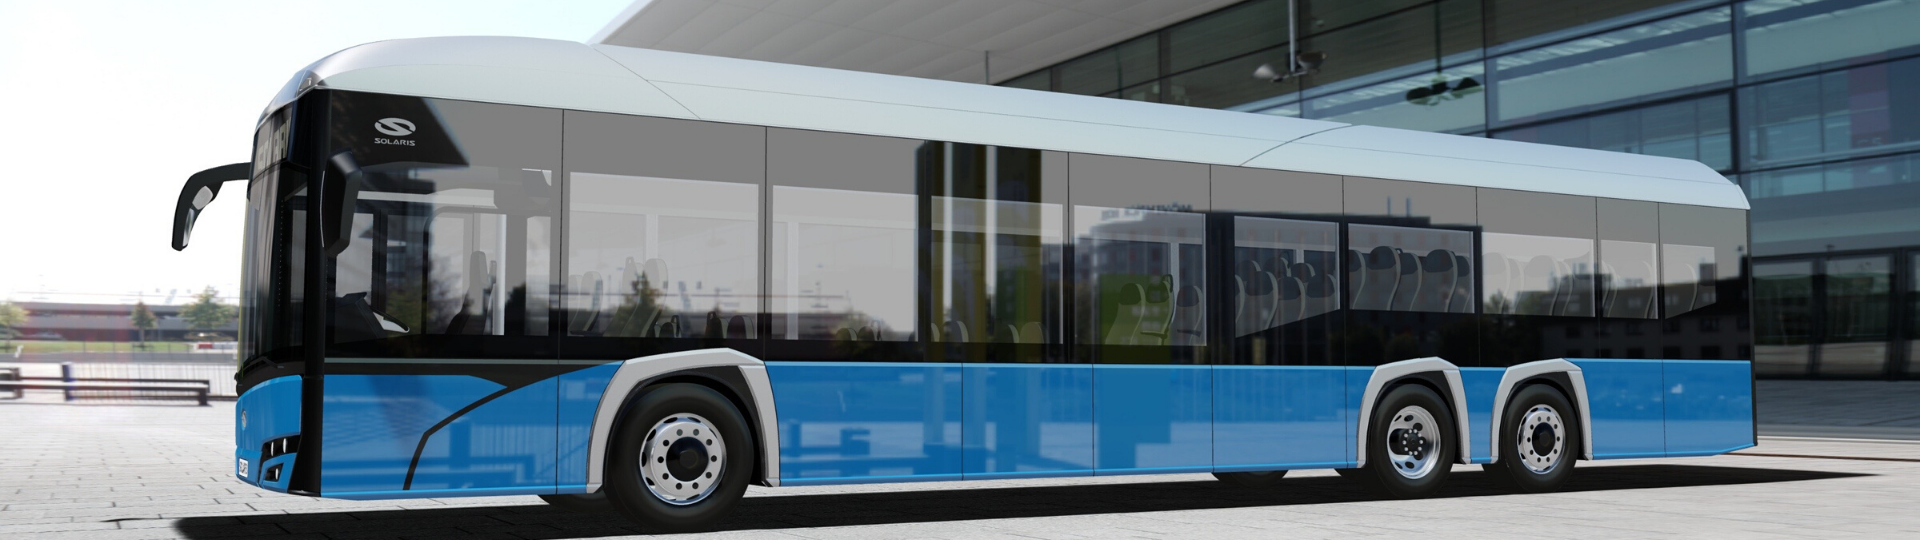 Solaris wird neuen 15-Meter-Bus mit Elektroantrieb vorstellen!